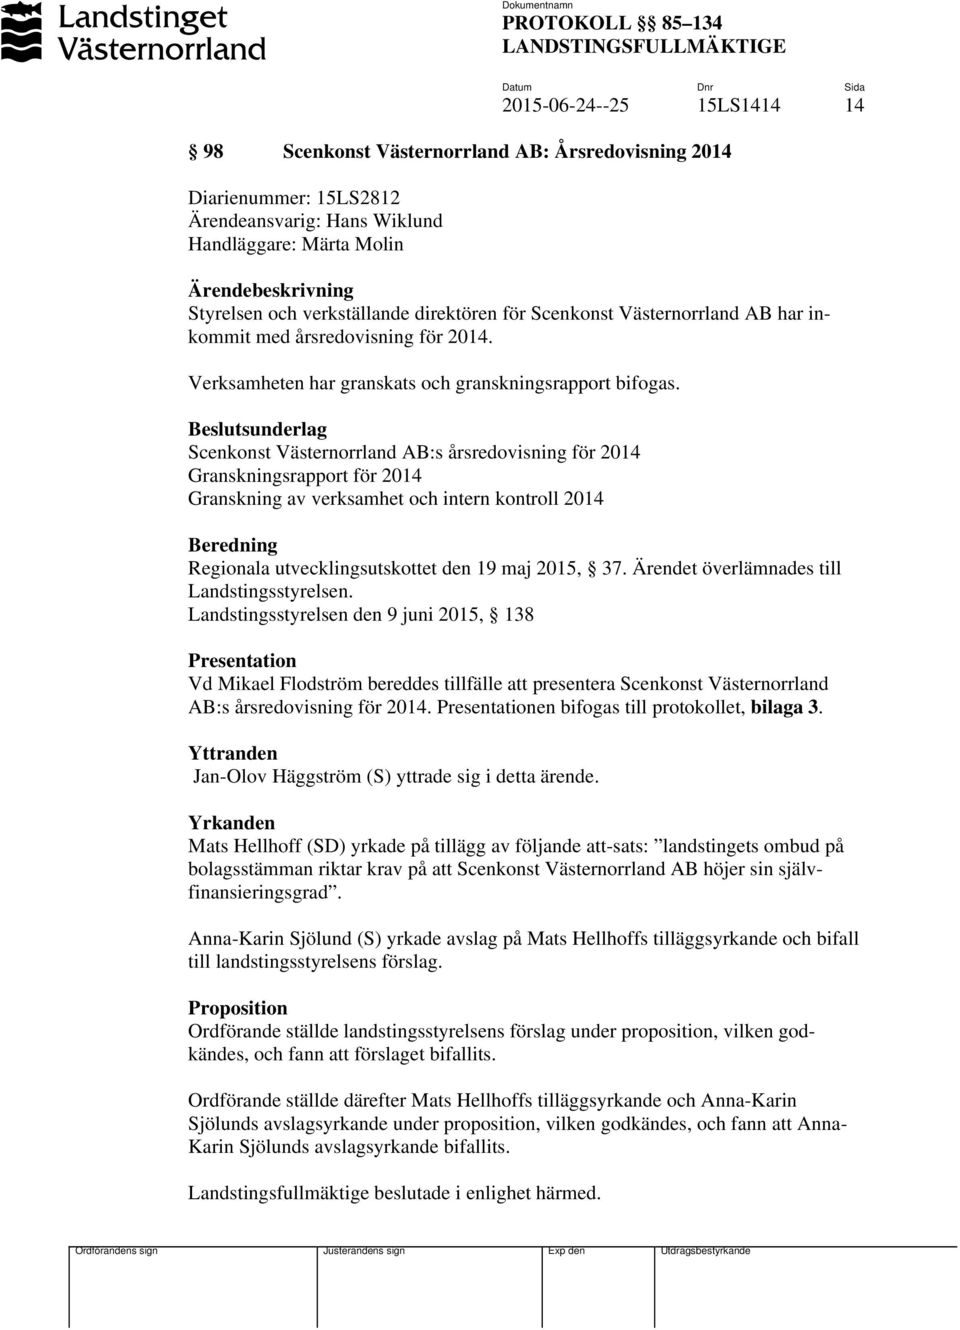 Beslutsunderlag Scenkonst Västernorrland AB:s årsredovisning för 2014 Granskningsrapport för 2014 Granskning av verksamhet och intern kontroll 2014 Beredning Regionala utvecklingsutskottet den 19 maj